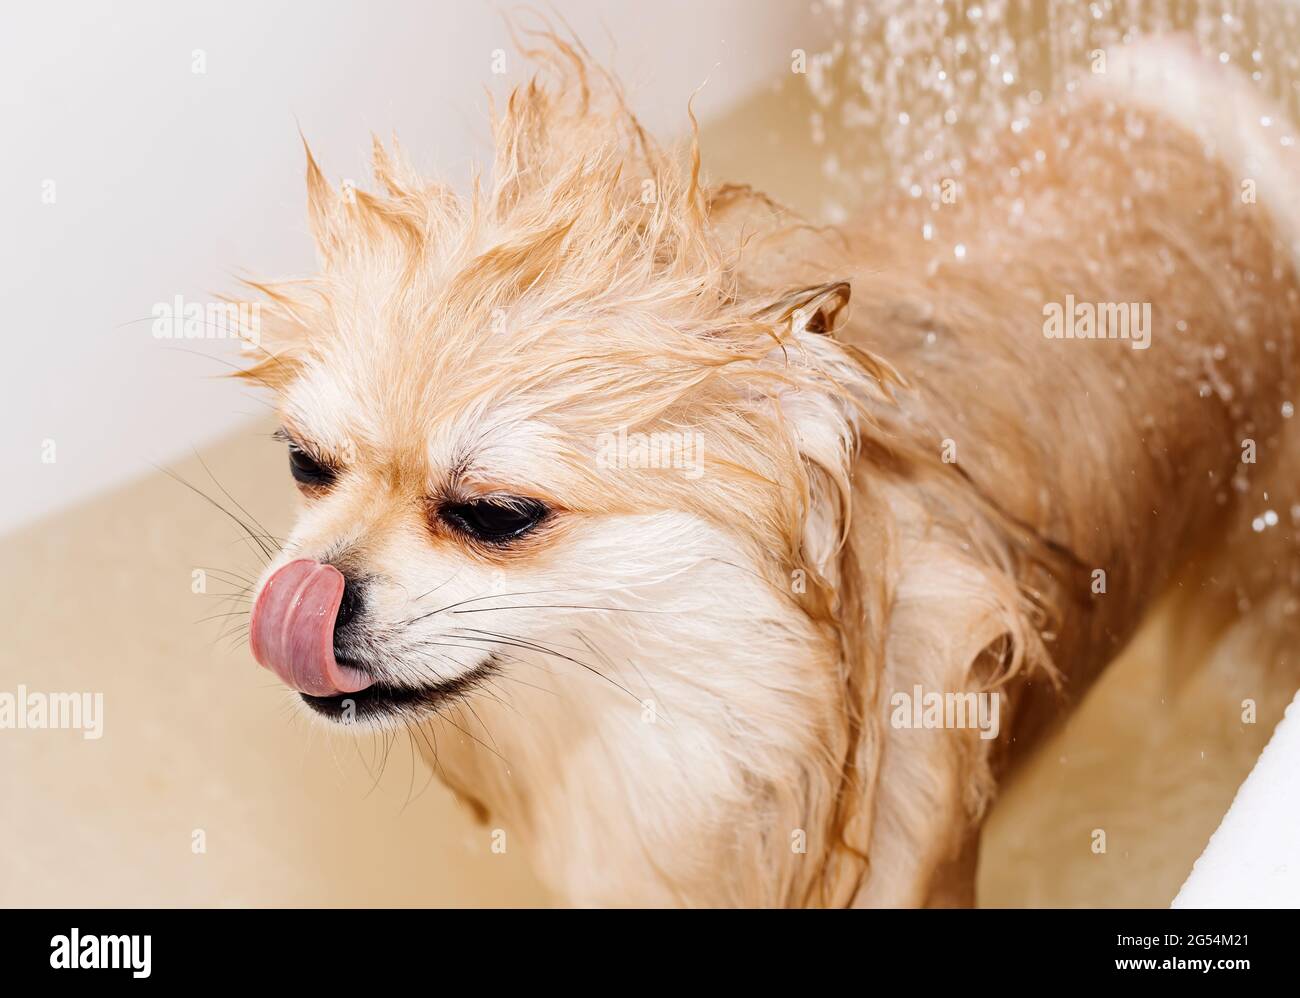 Perro.Pomeranian toma una ducha y se lava. El spitz está submisivamente  bajo la presión del agua. El perro está bañado Fotografía de stock - Alamy